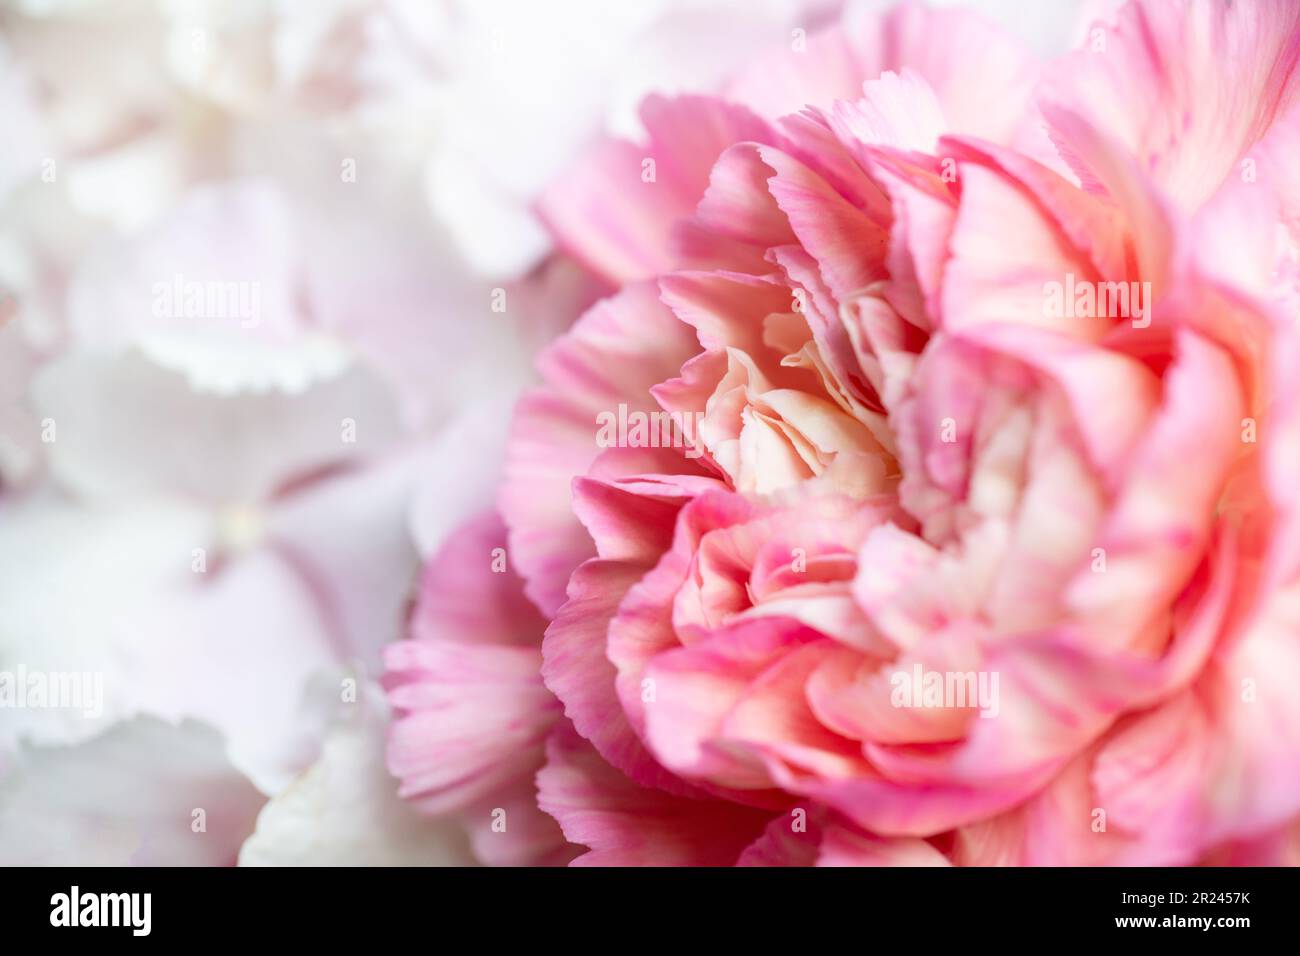 Macro photographie gros plan d'une fleur de pivoine rose Banque D'Images